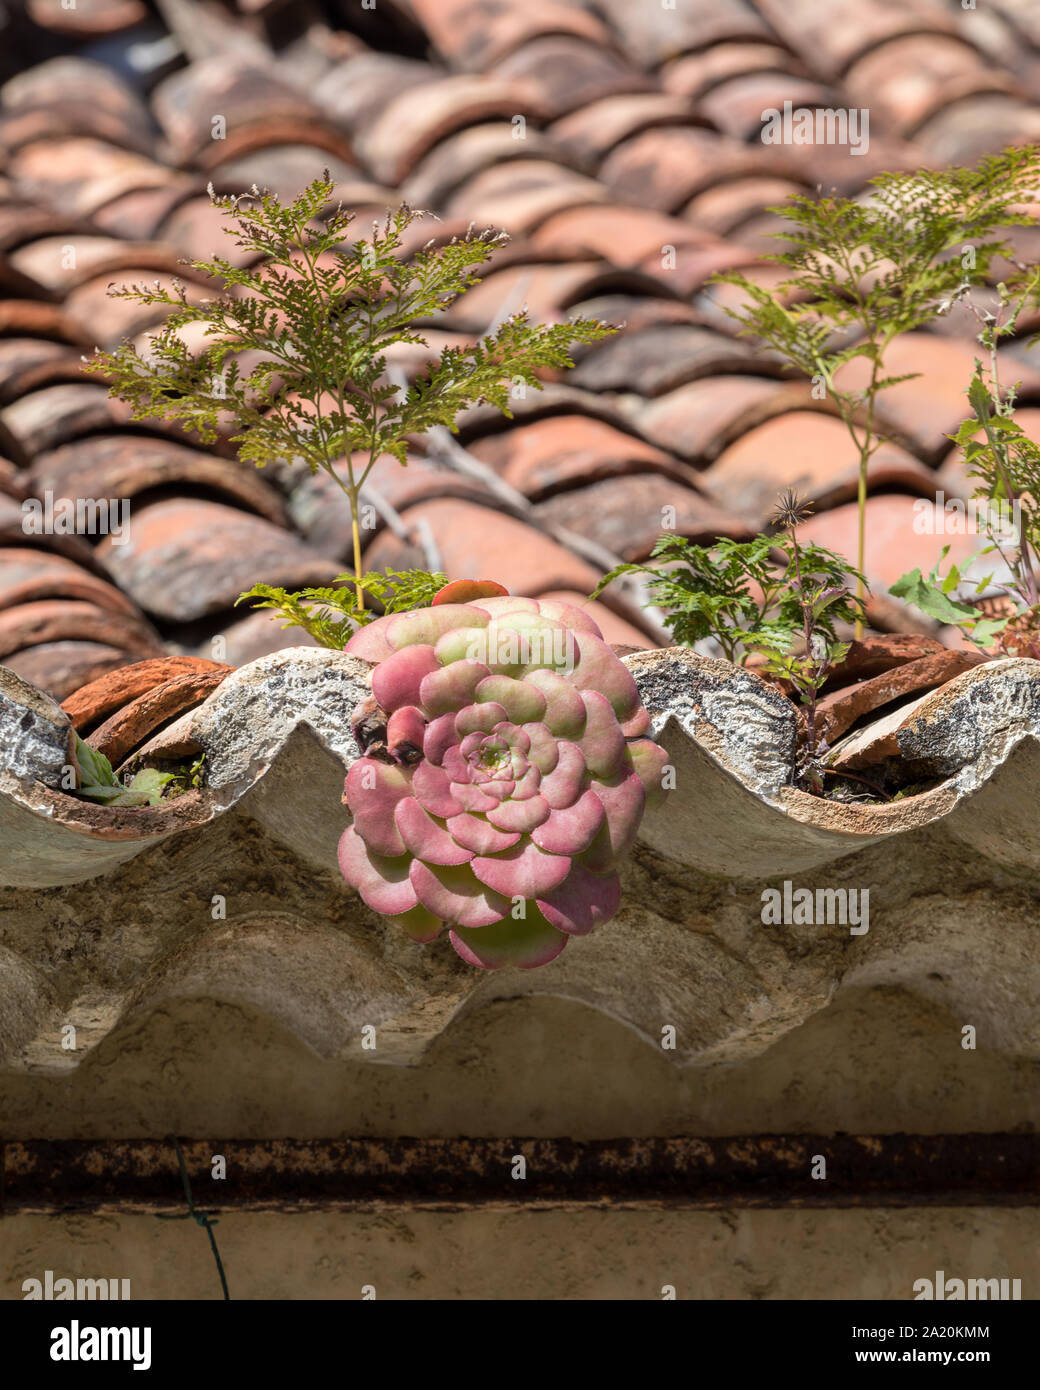 Miniatur sukkulenten Pflanzen wachsen auf eine alte Dachziegel. Madeira.  Portugal Stockfotografie - Alamy